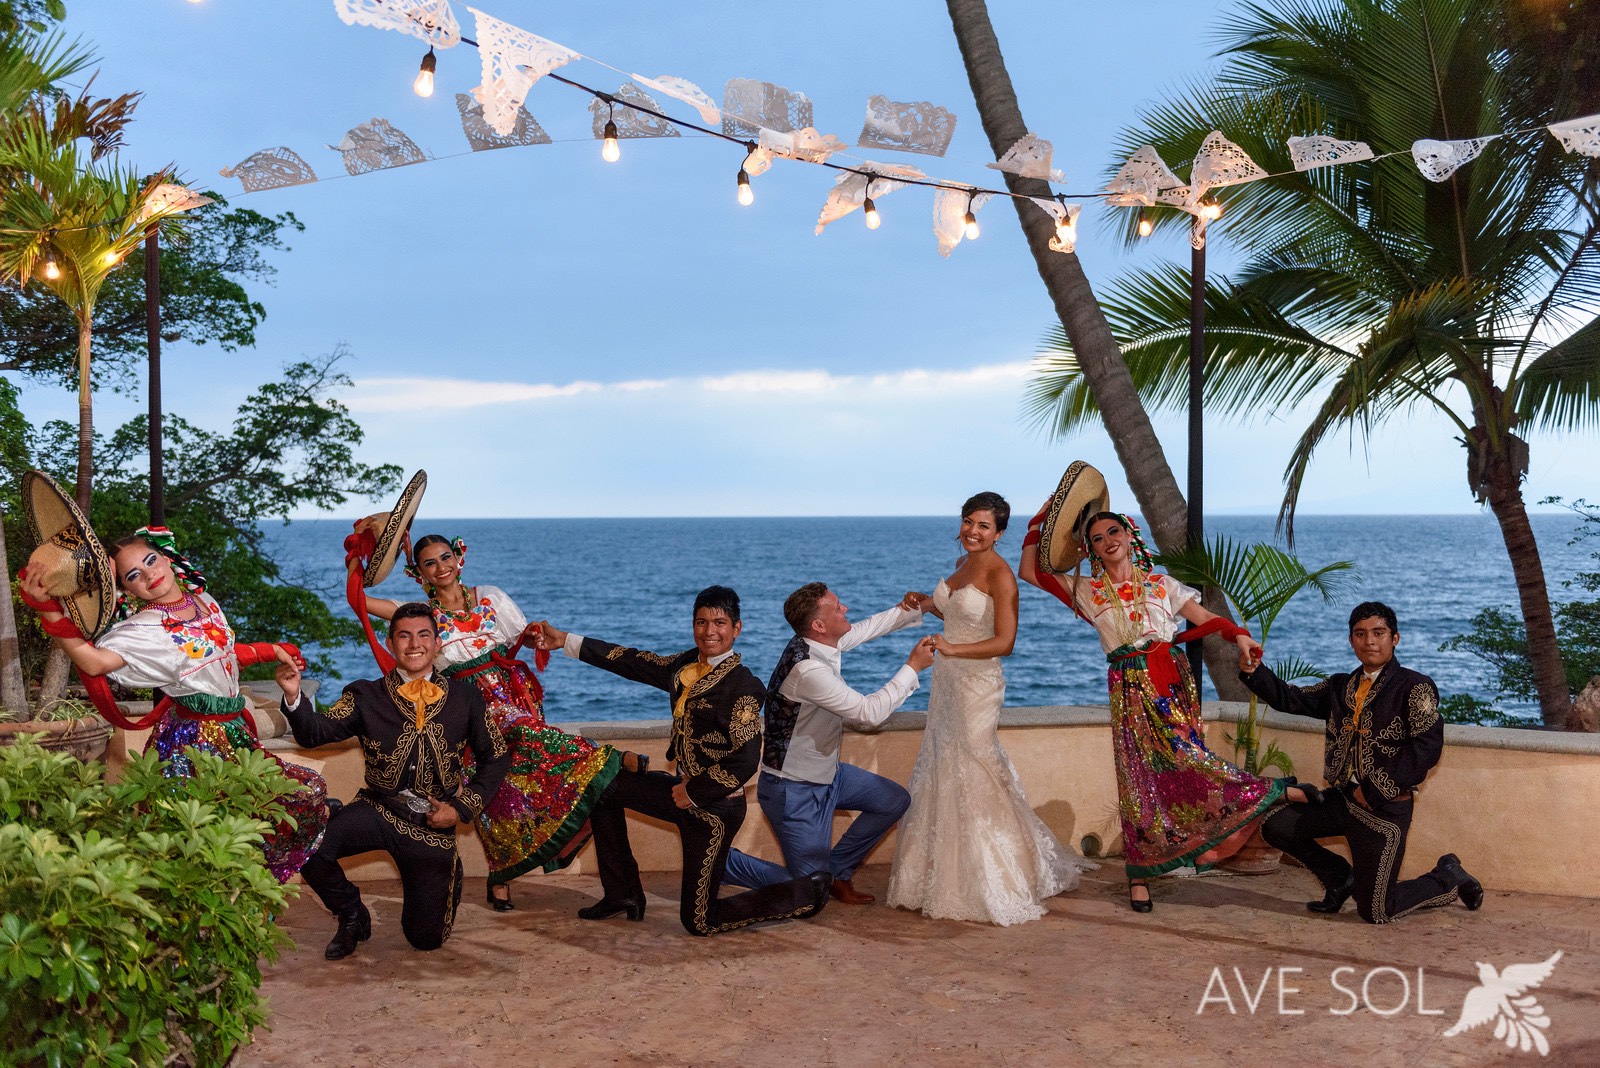 A Modern Desert-Meets-Sea Wedding in Cabo San Lucas